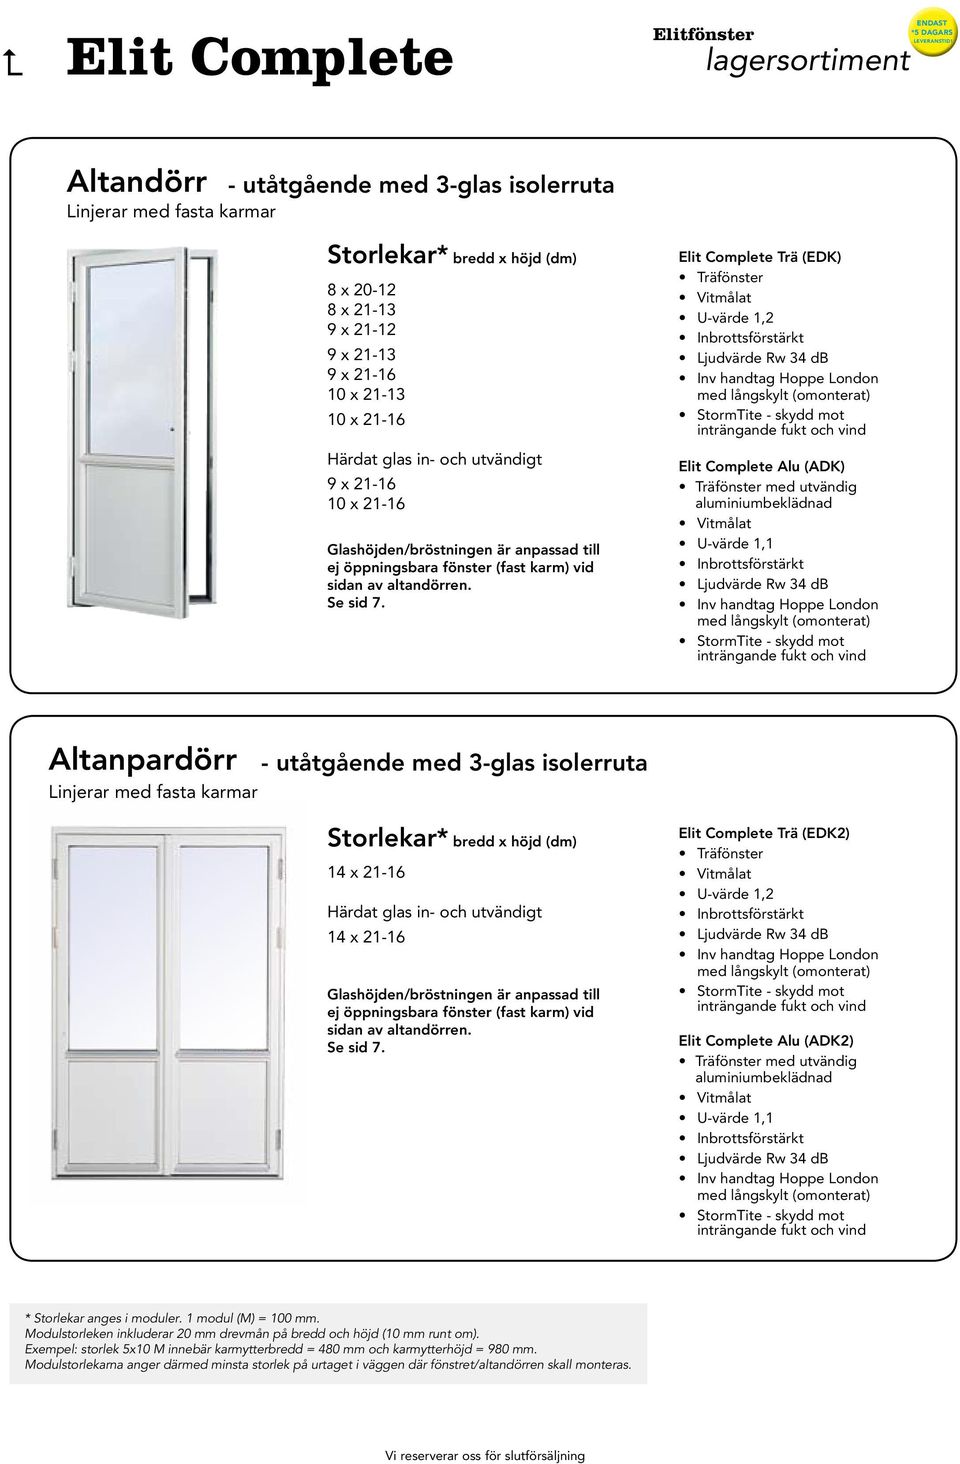 Trä (EDK) Alu (ADK) med utvändig Altanpardörr Linjerar med fasta karmar - utåtgående med 3-glas isolerruta 14 x 21-16 Härdat glas in- och utvändigt 14 x